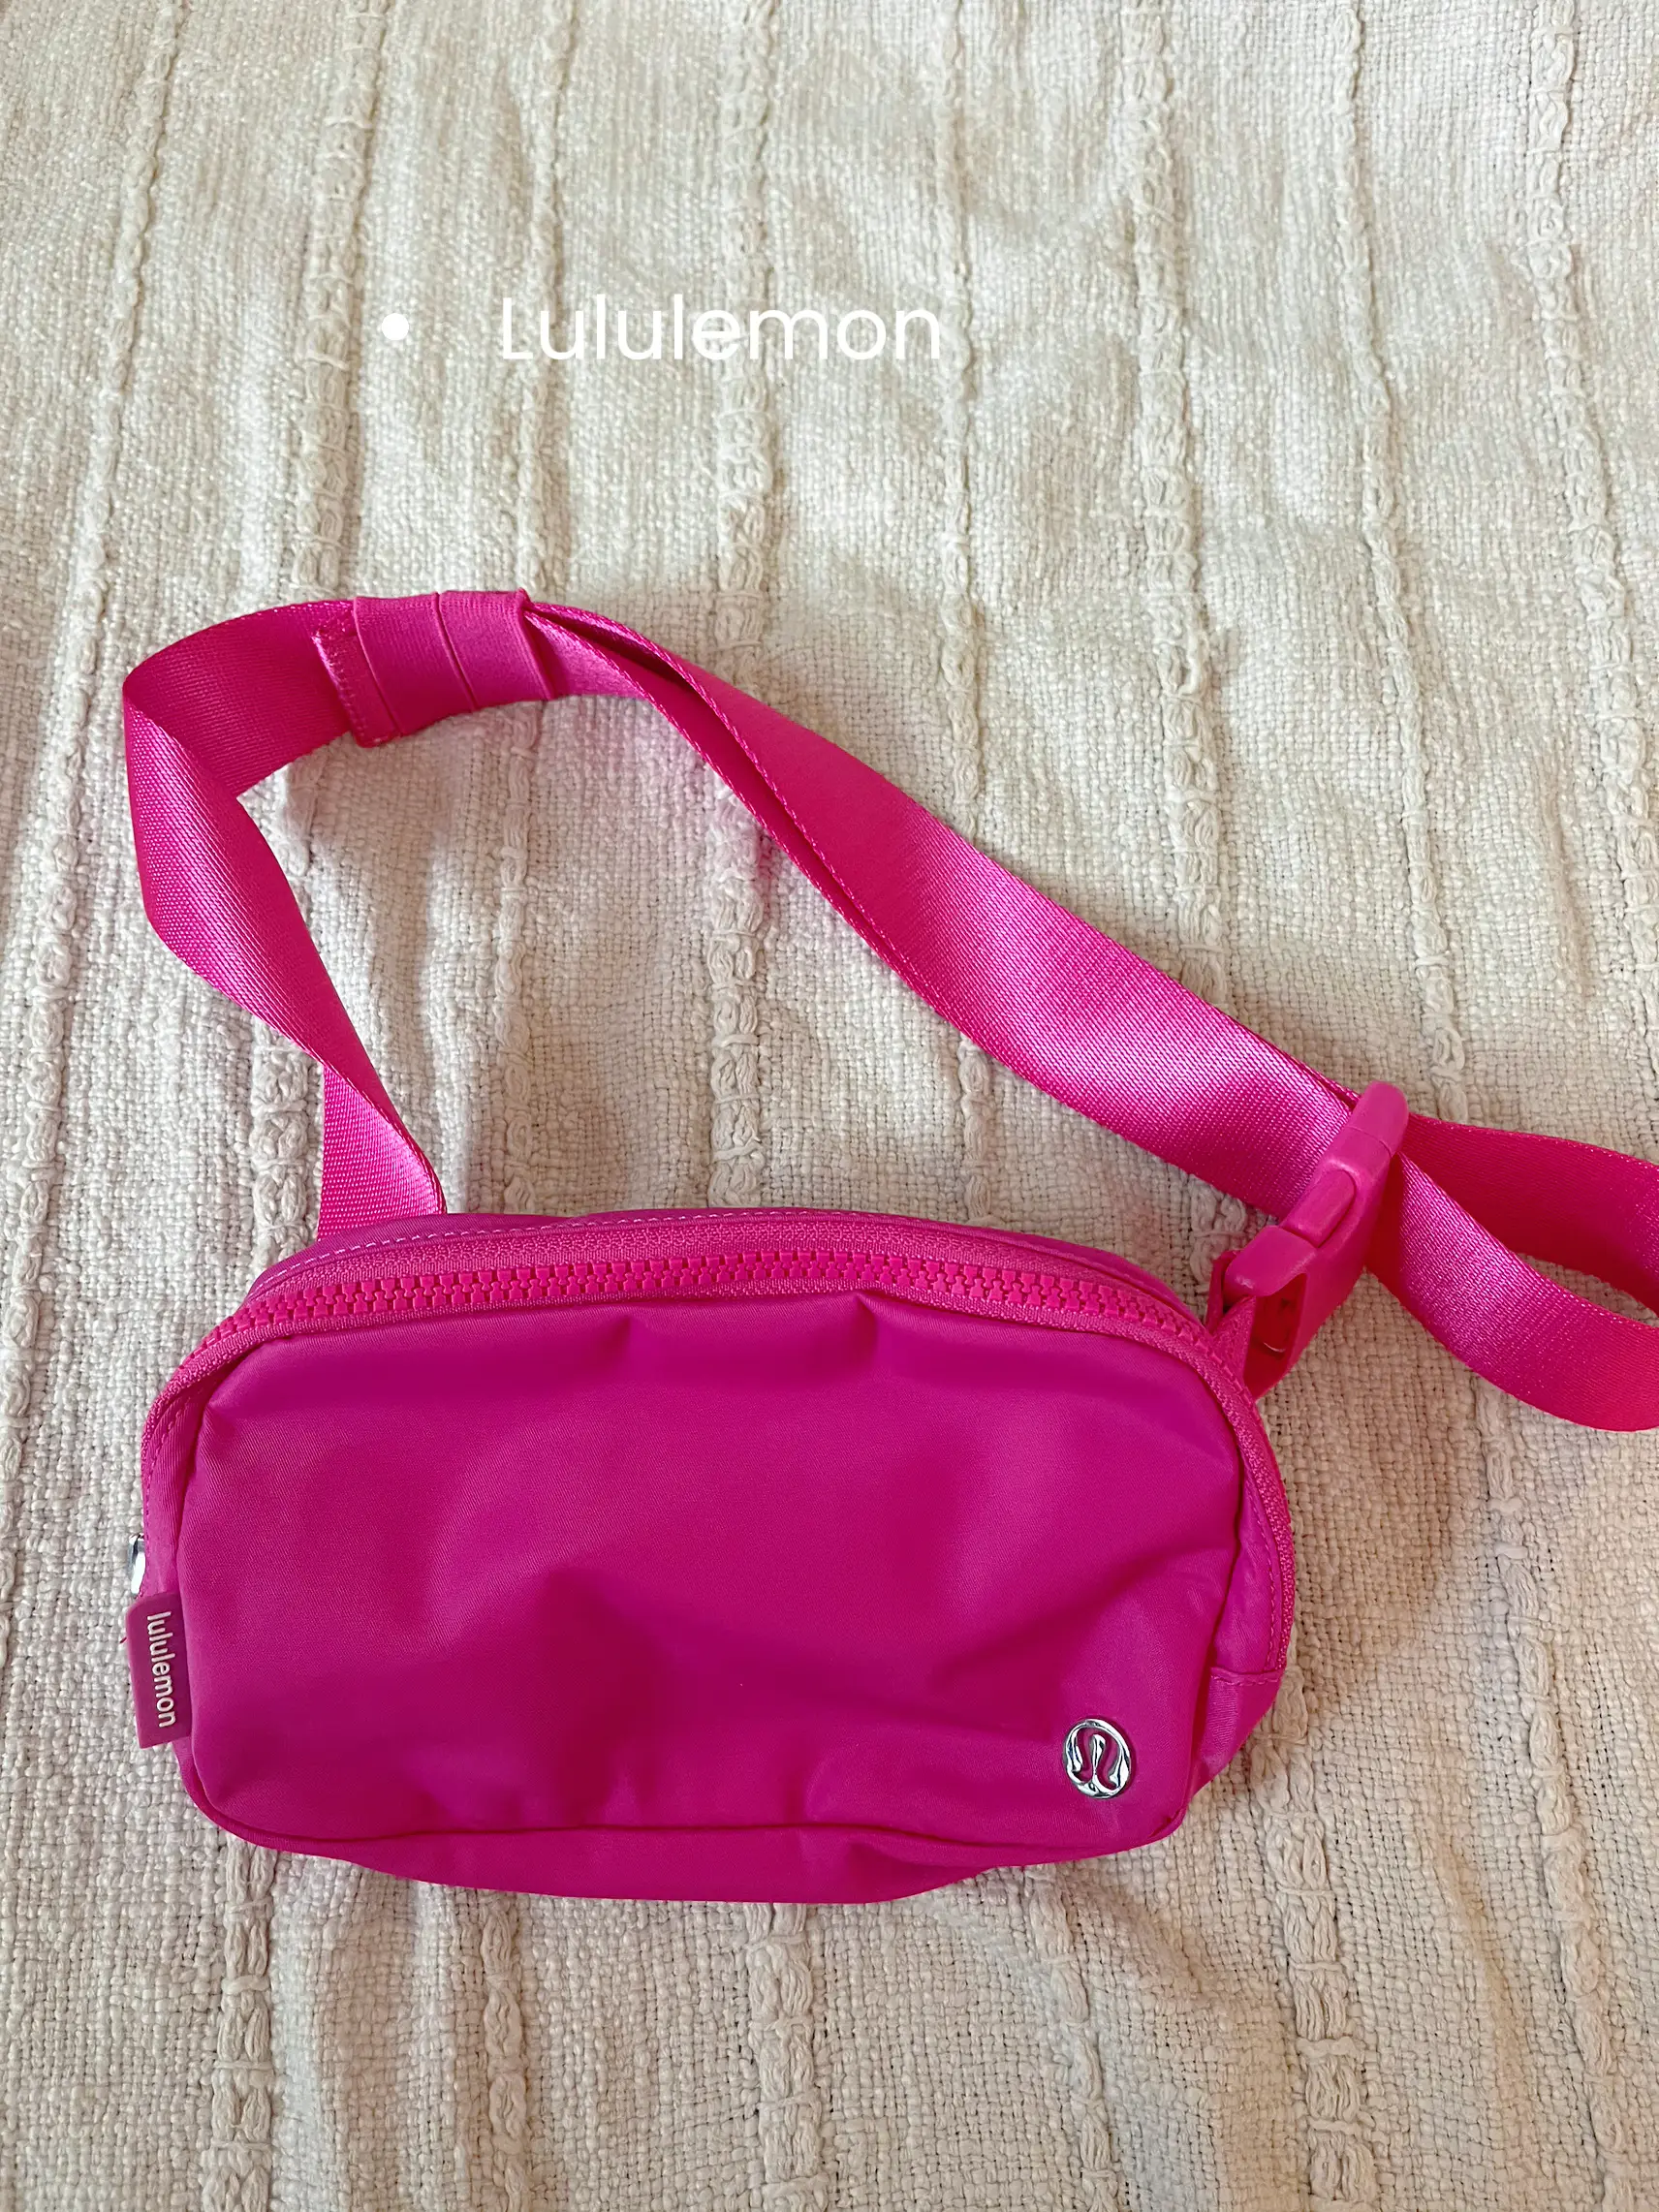 The lululemon sonic pink belt bag is back! + more new arrivals #lululemon  #lululemoncreator 